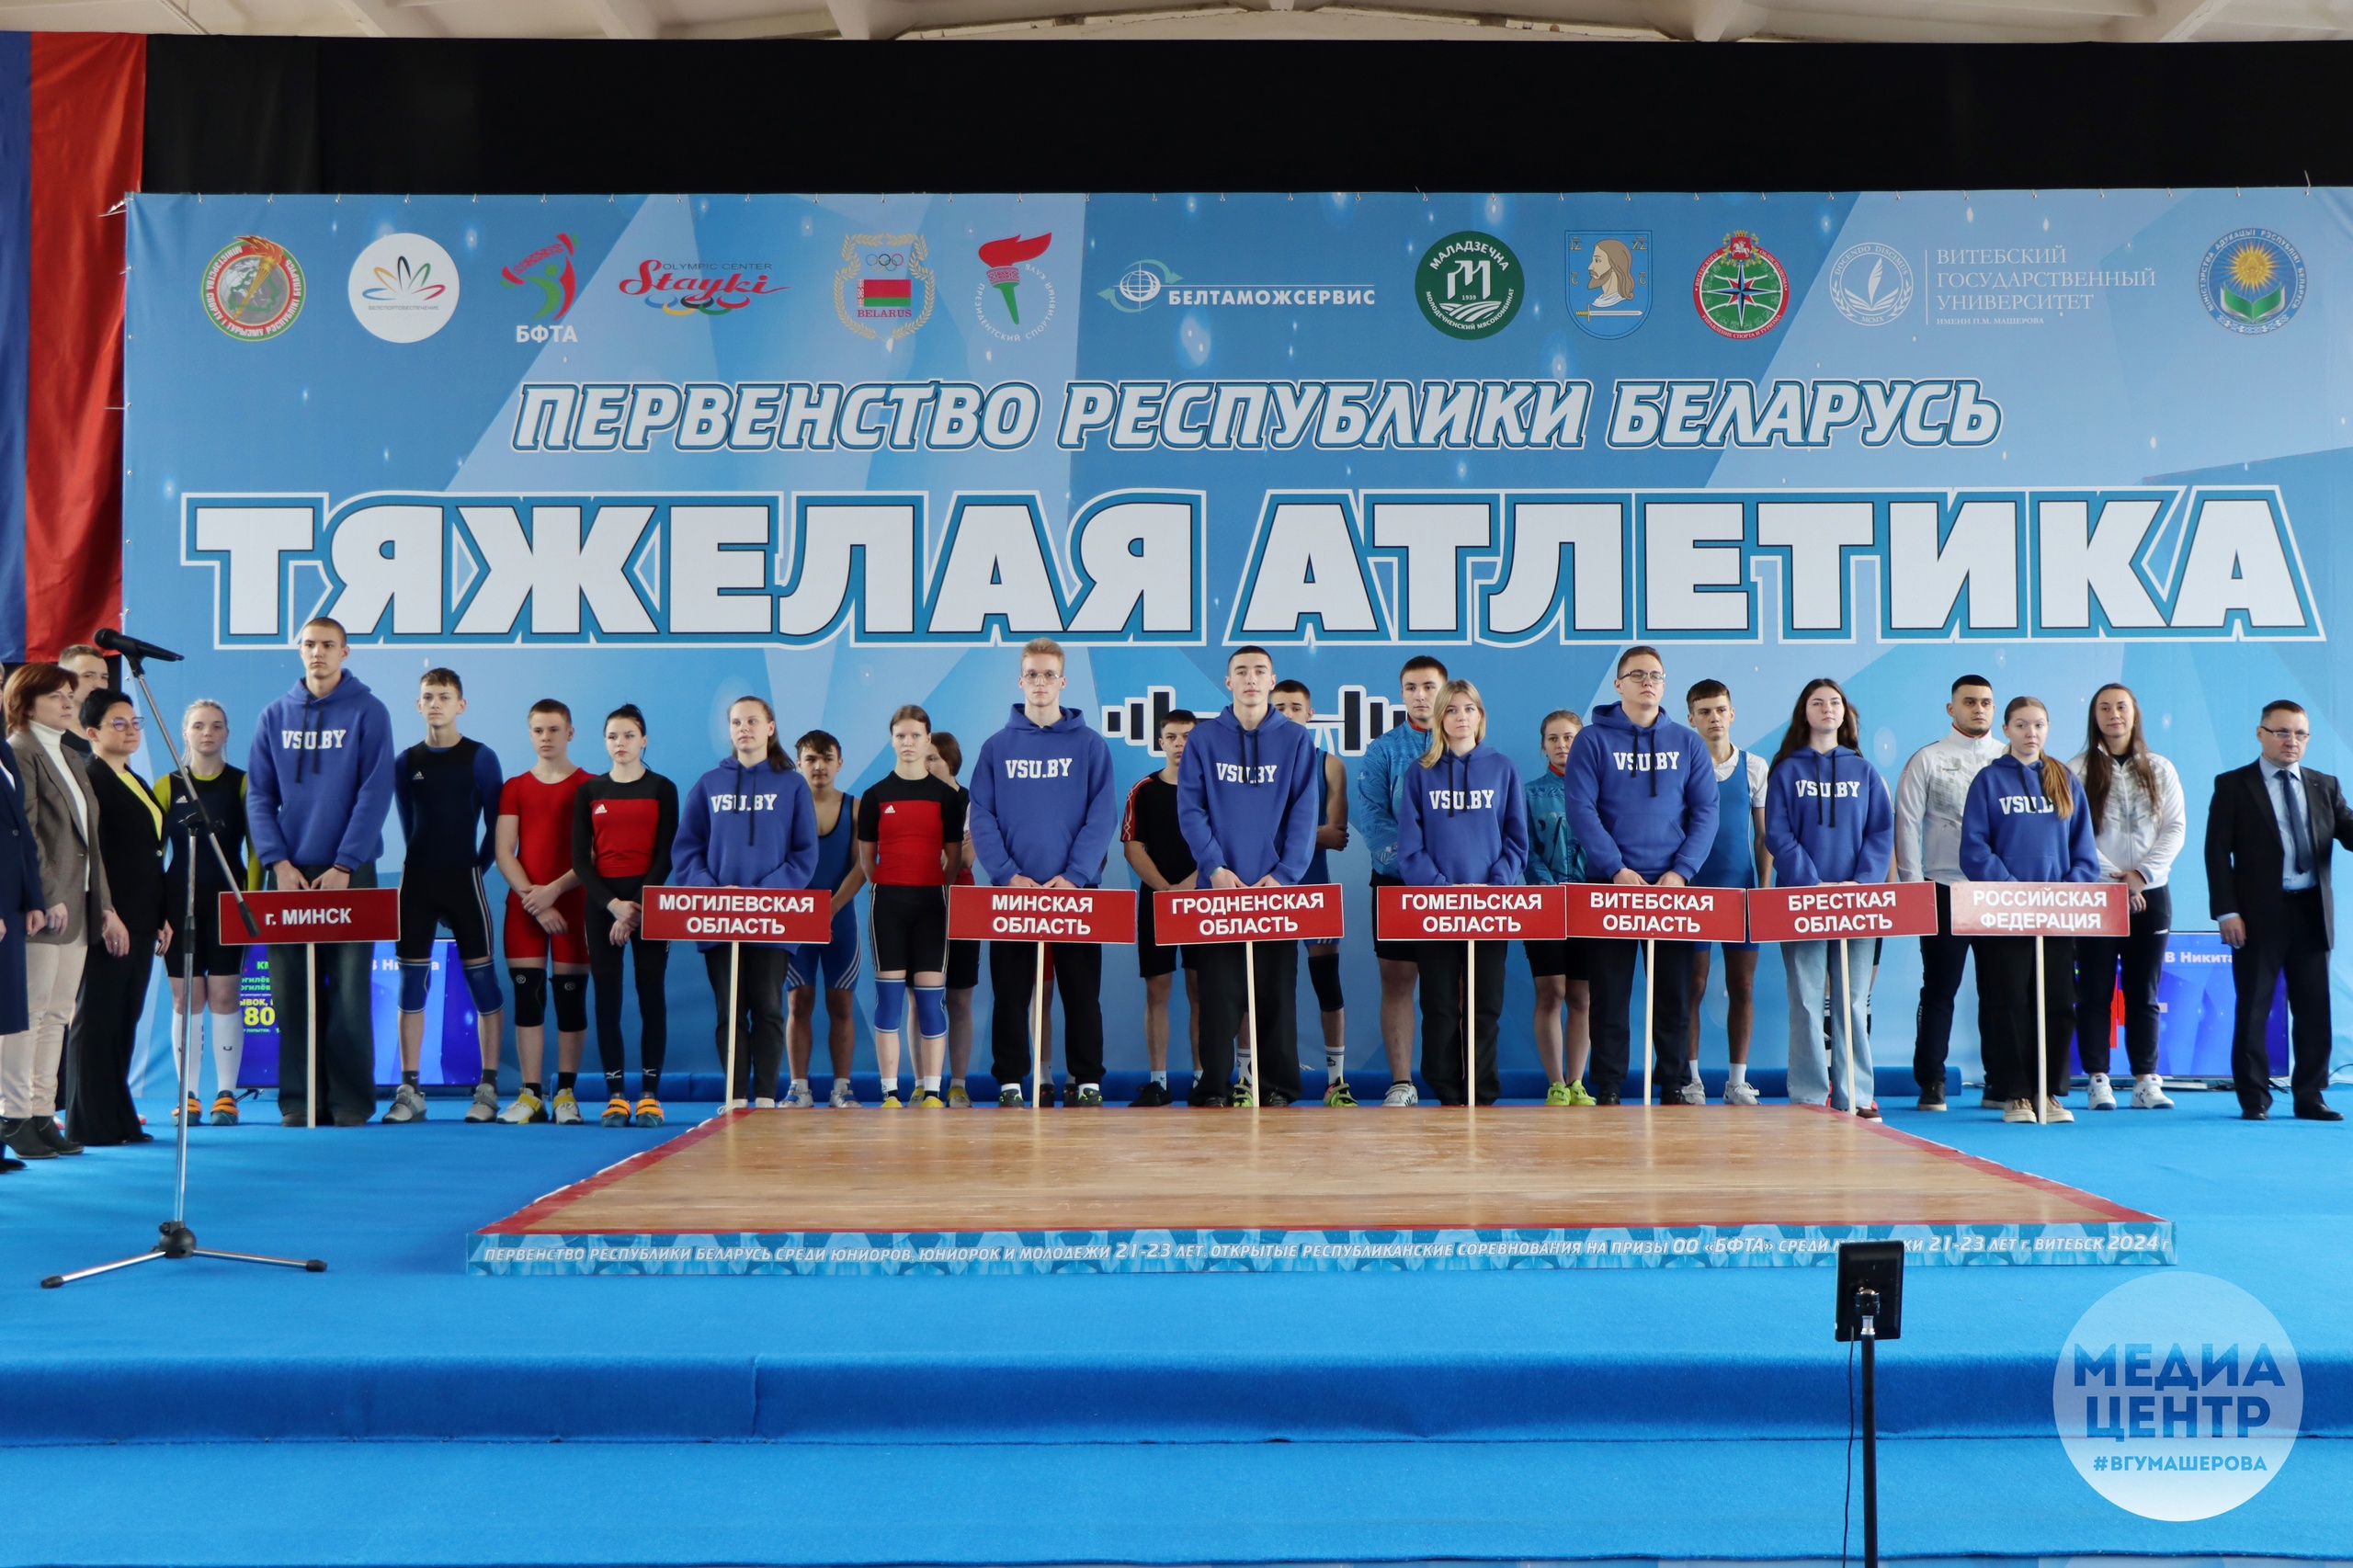 Витебск принимал участников первенства Беларуси по тяжелой атлетике.